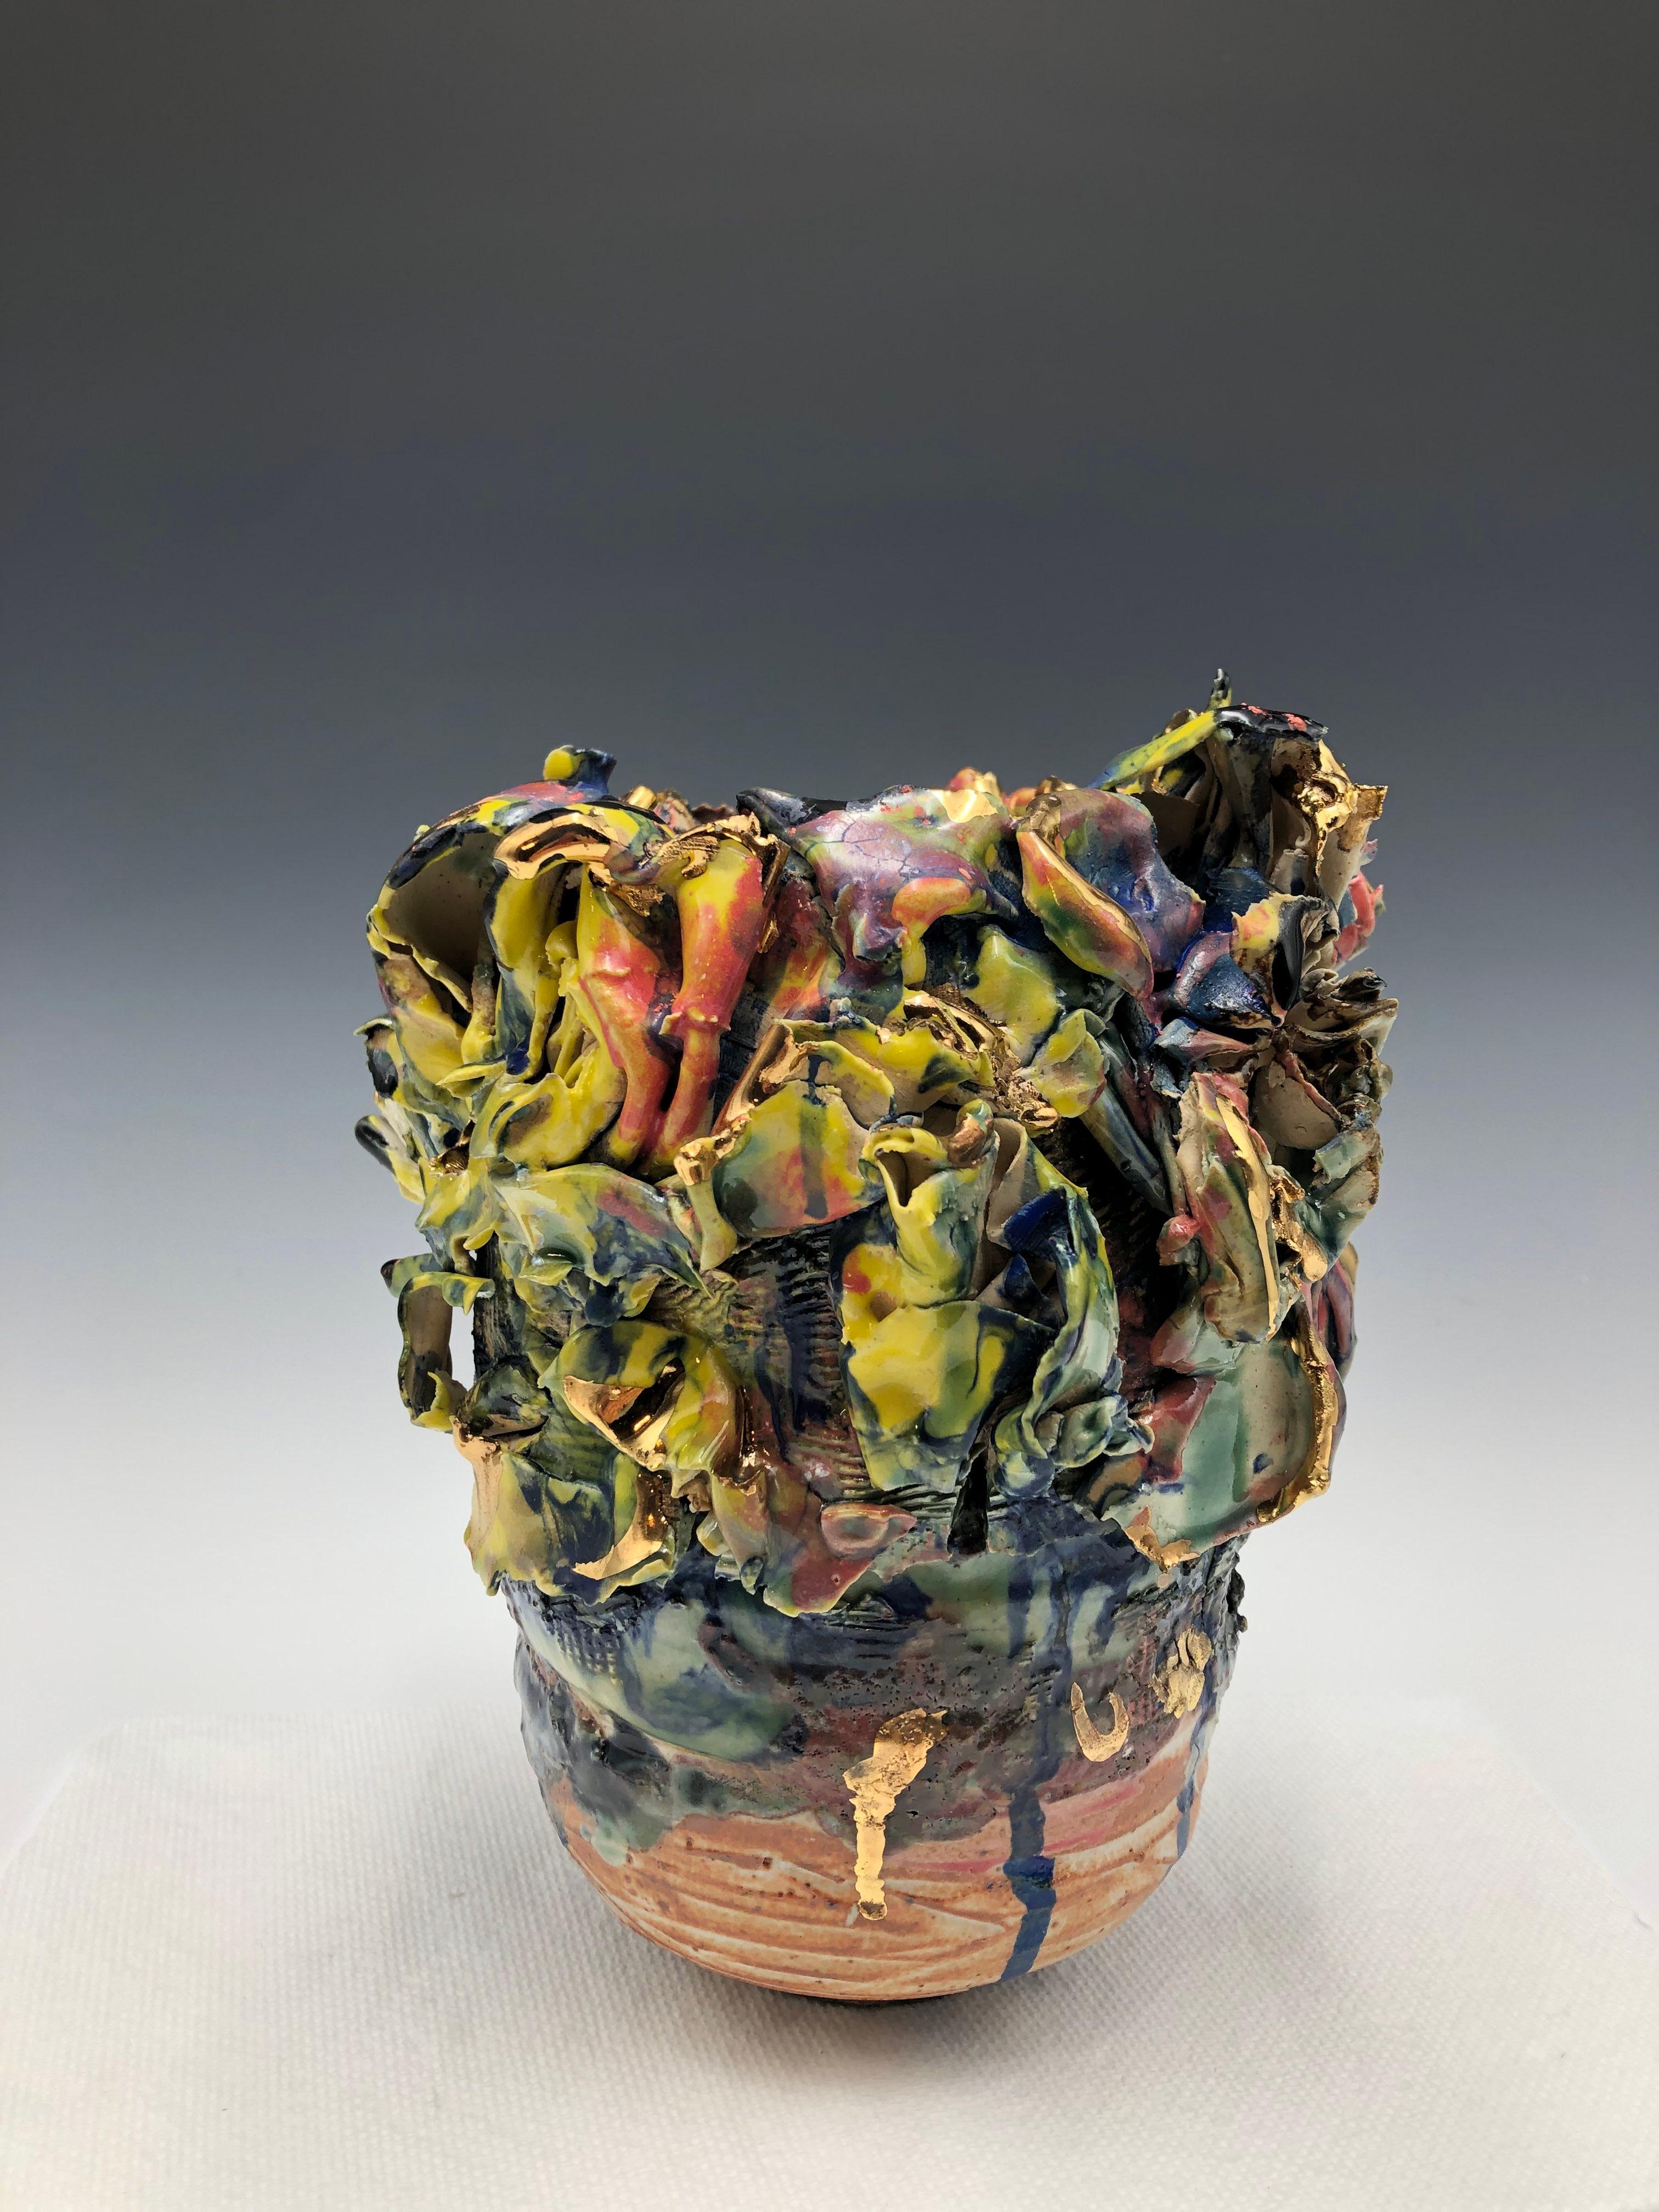 Abstract Sculpture Lauren Skelly Bailey - Reef Ware VI